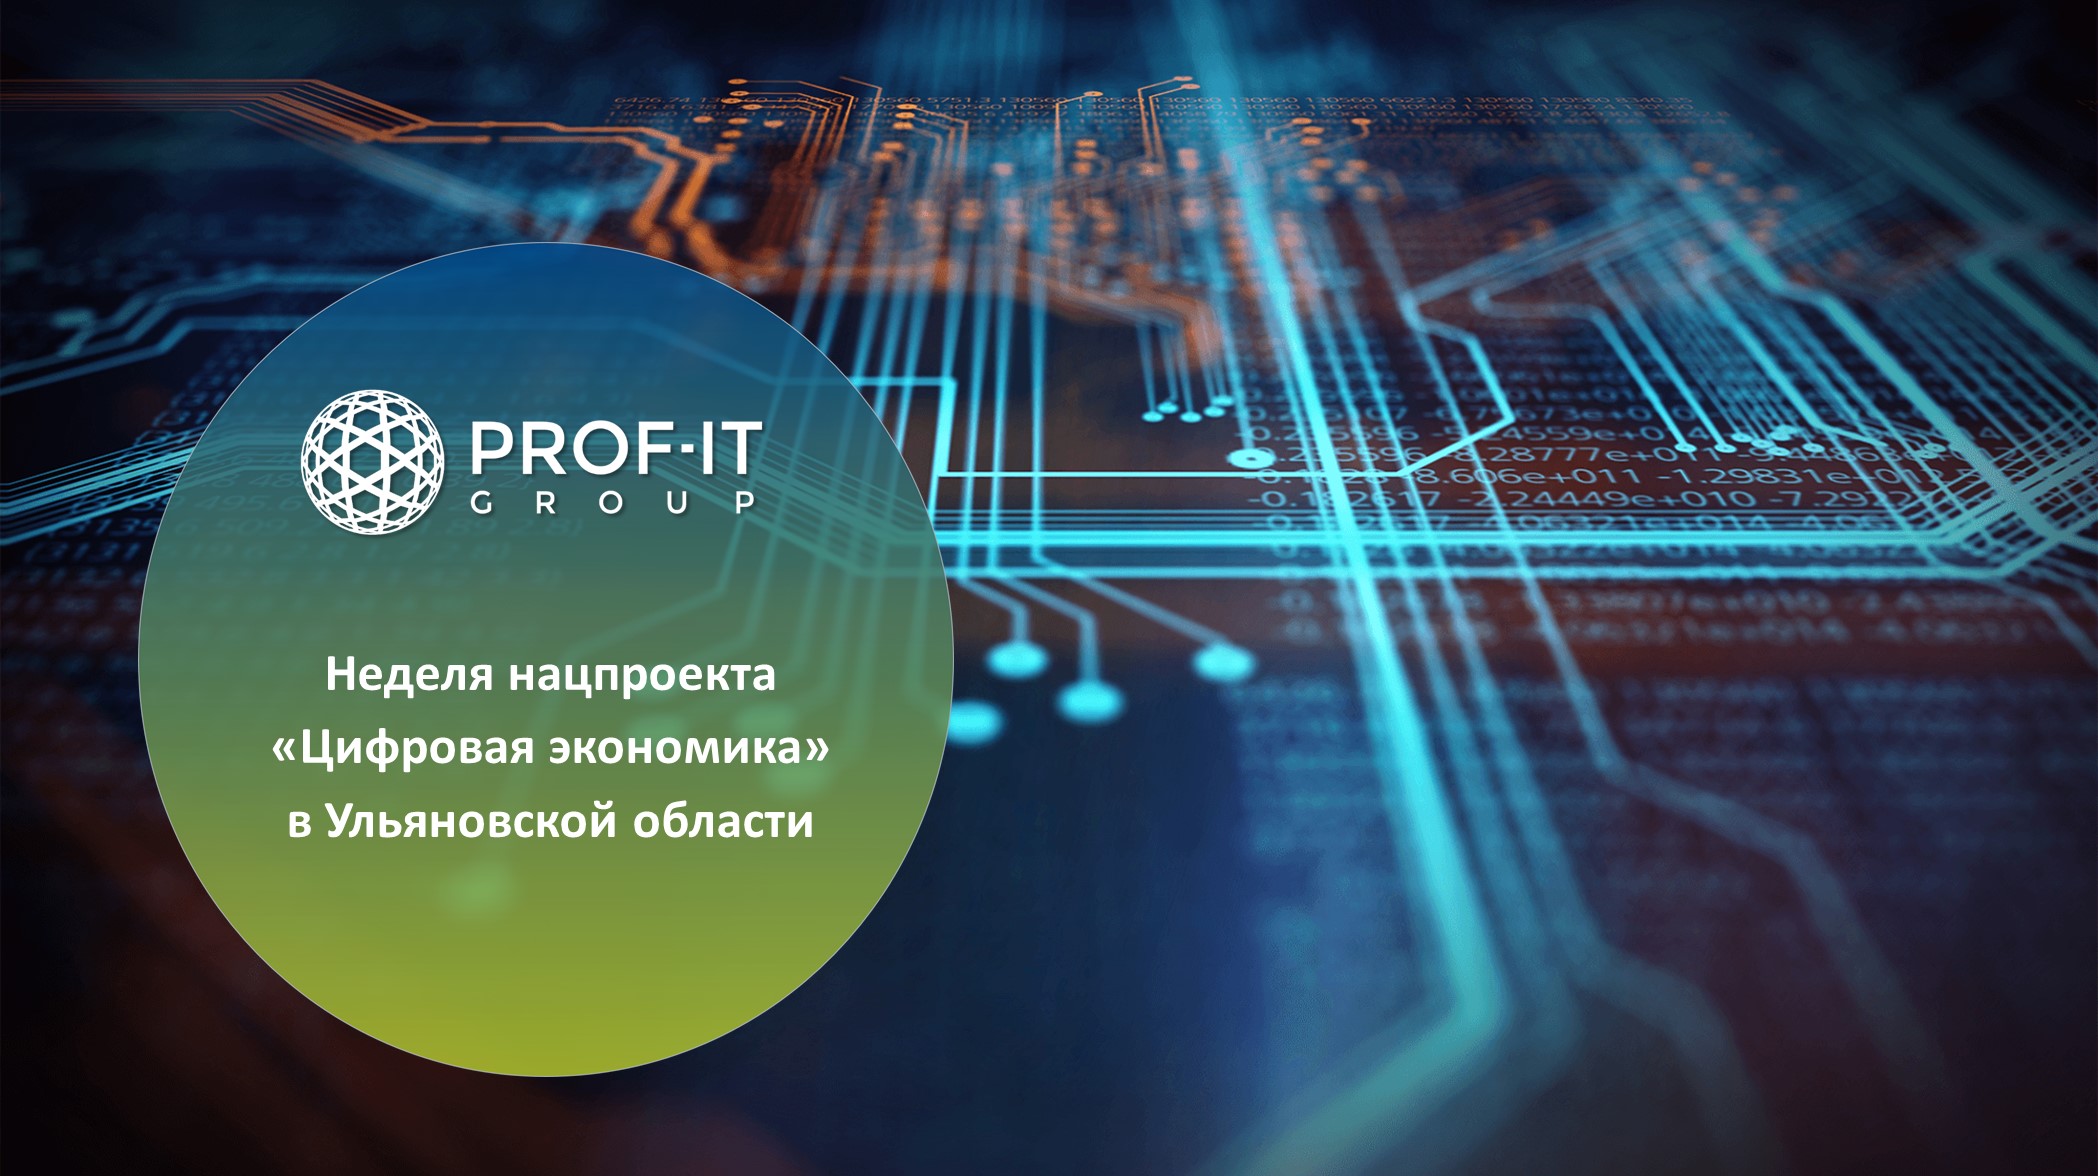 PROF-IT GROUP приняла участие в неделе нацпроекта «Цифровая экономика» в Ульяновской области